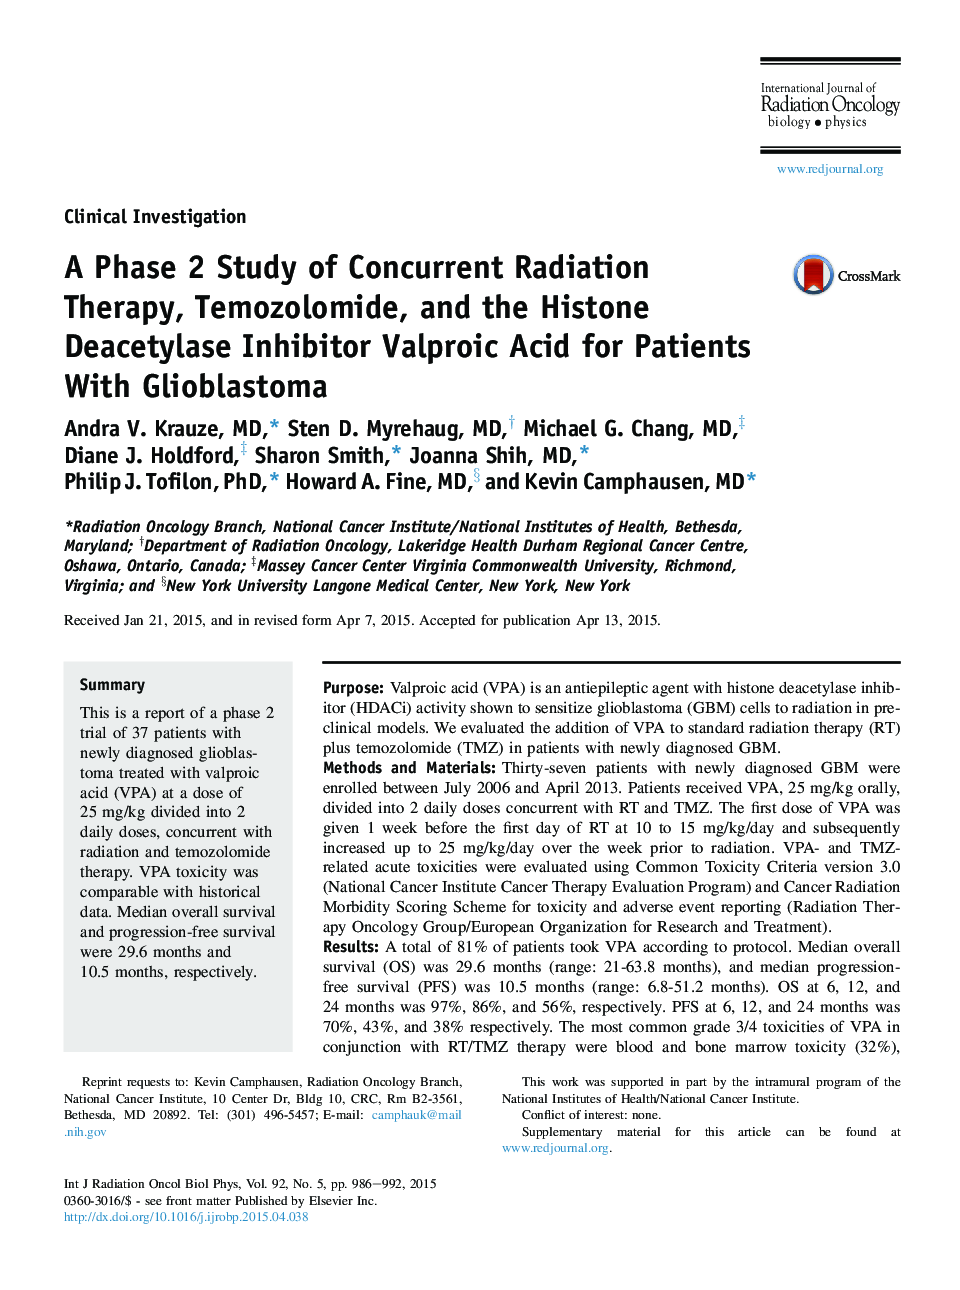 فاز 2 مطالعه درمان رادیوتراپی همزمان، تموزولومید و اسید واپنوباکسی هیستون دیاستیلاز برای بیماران مبتلا به گلیوبلاستوما 